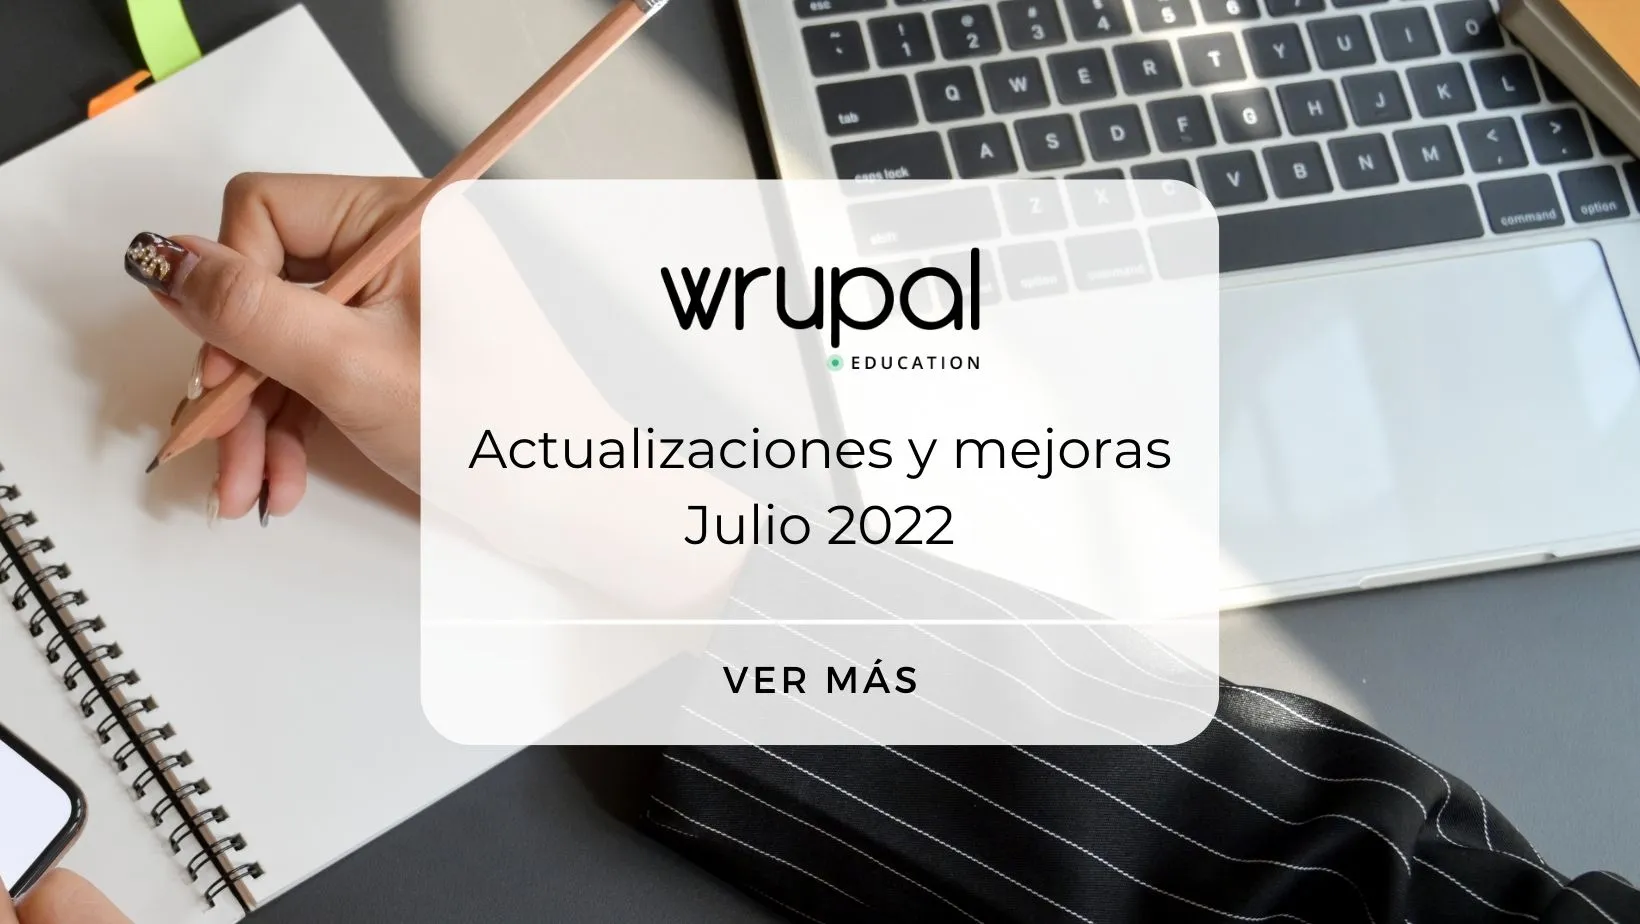 Wrupal Education: Actualizaciones y mejoras Julio 2022